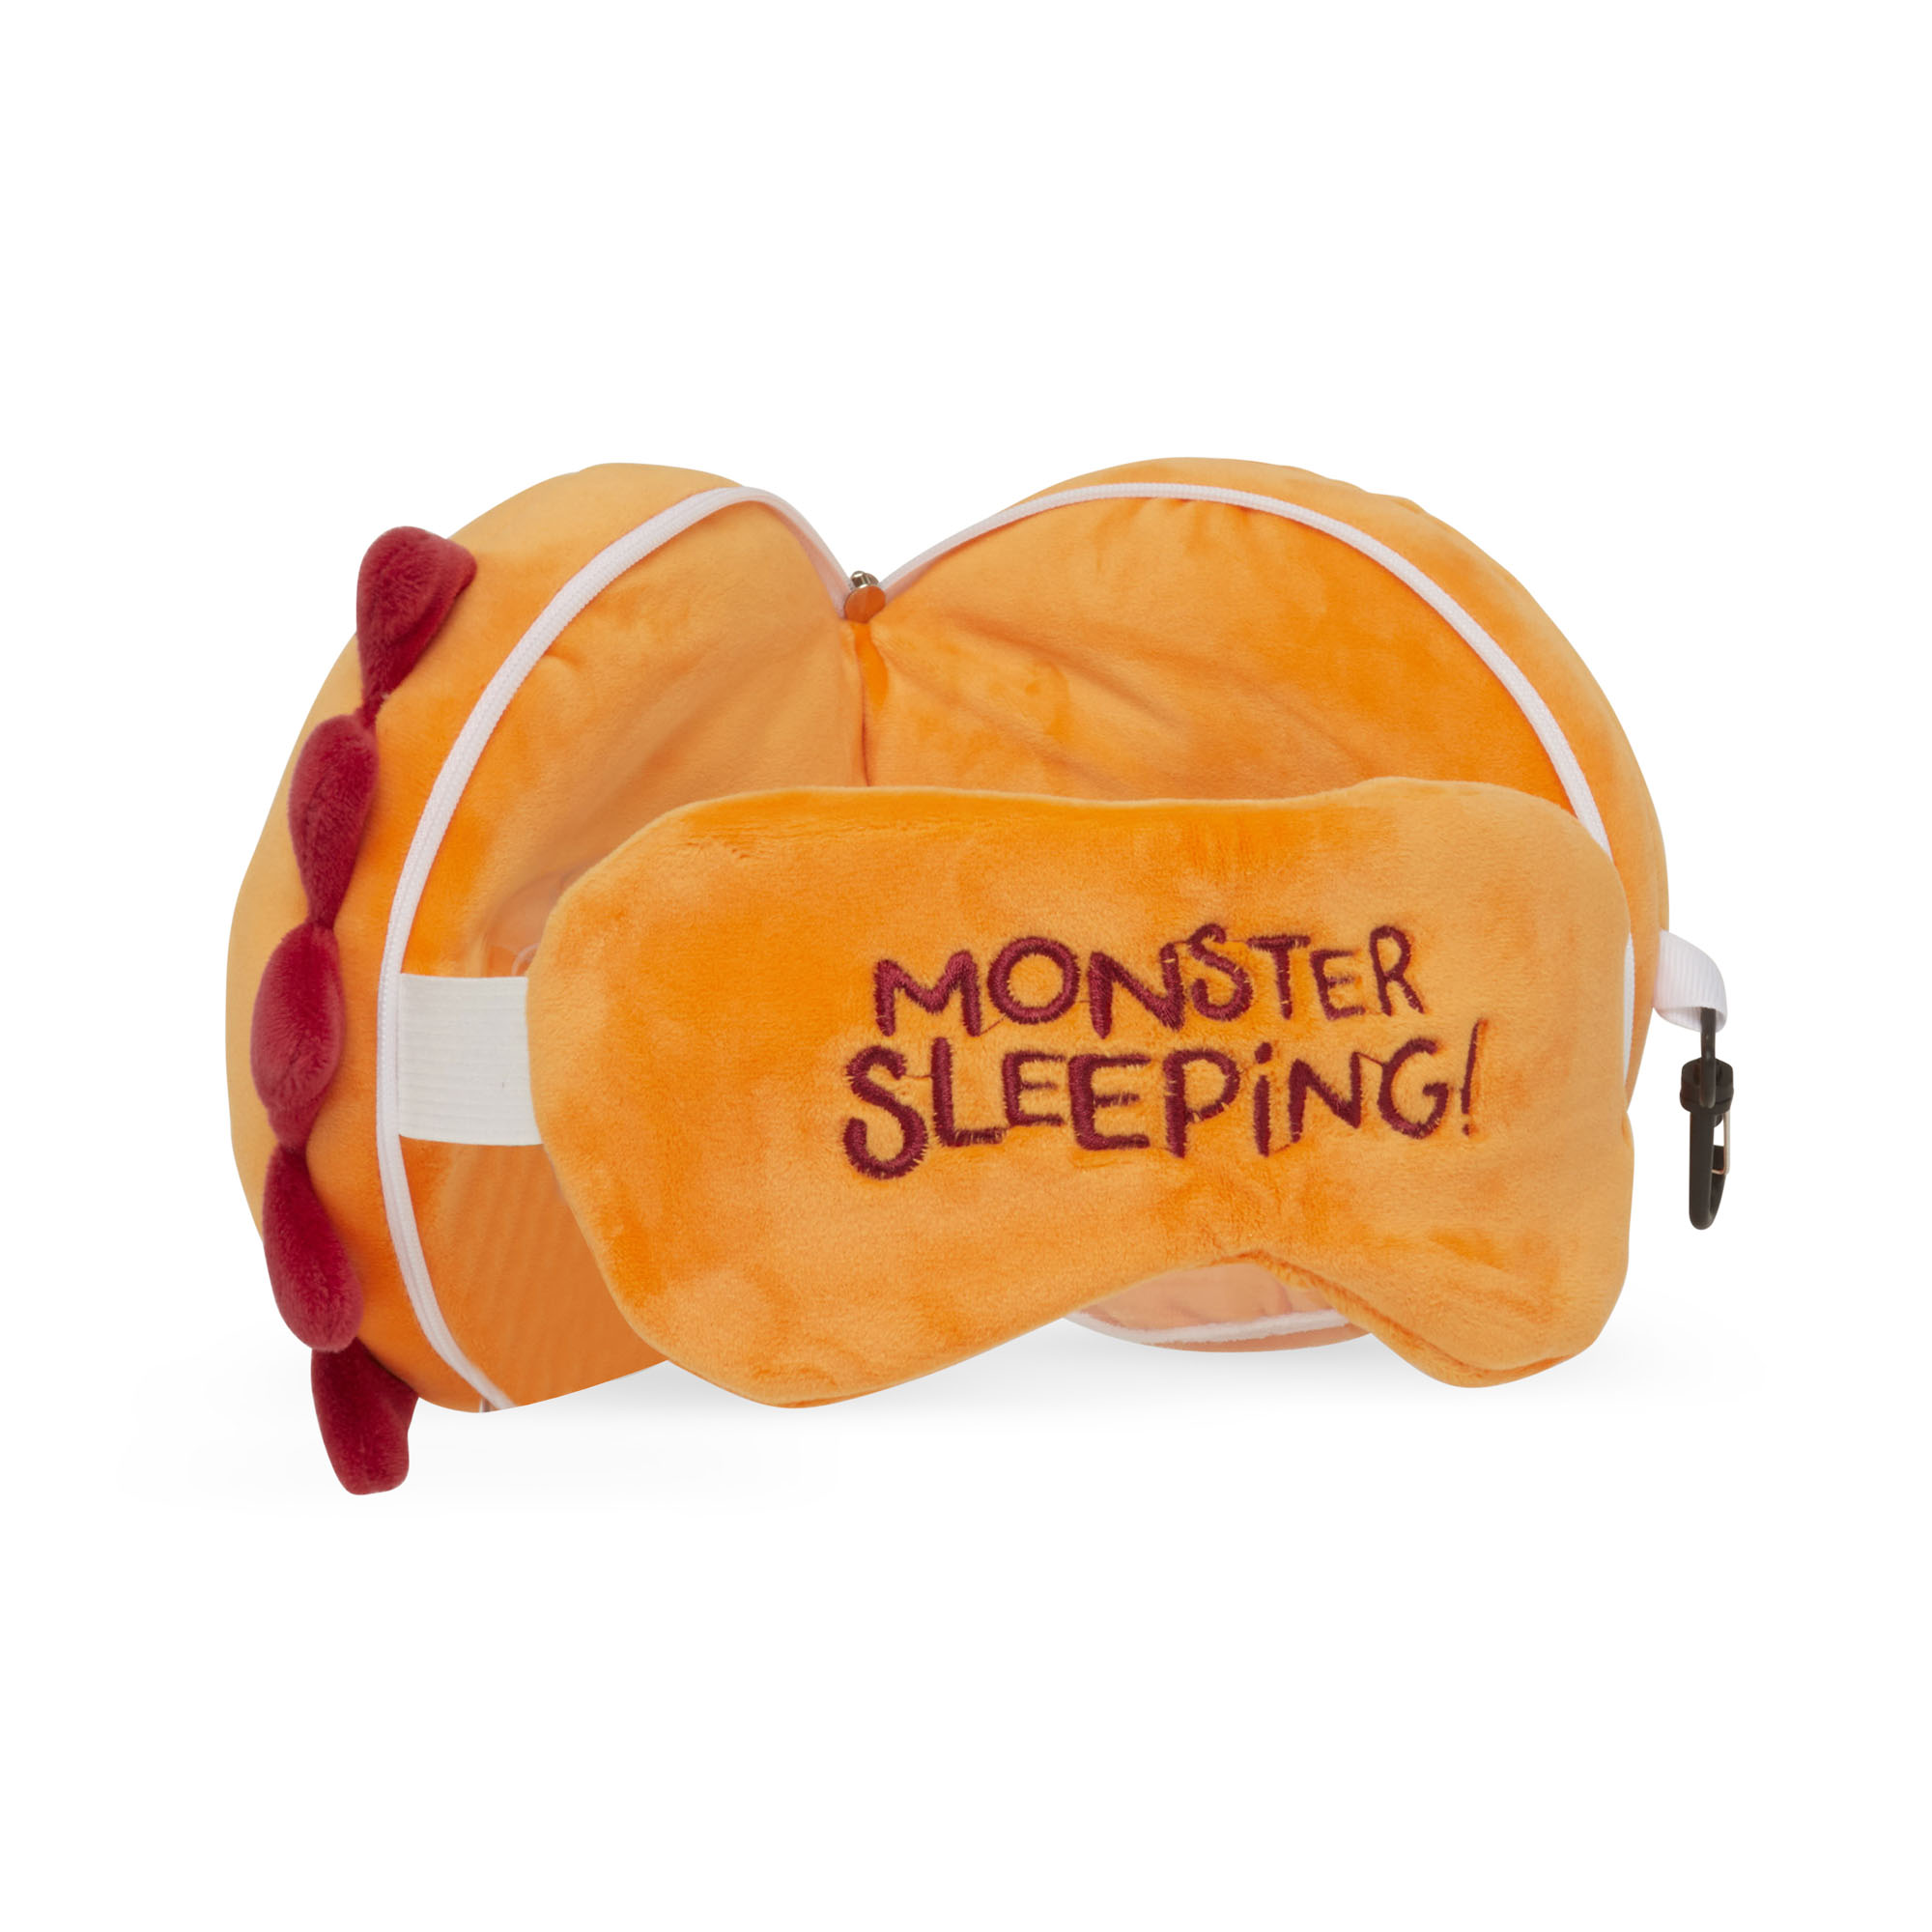 Cuscino da viaggio con maschera per dormire - Mostro arancio, , large